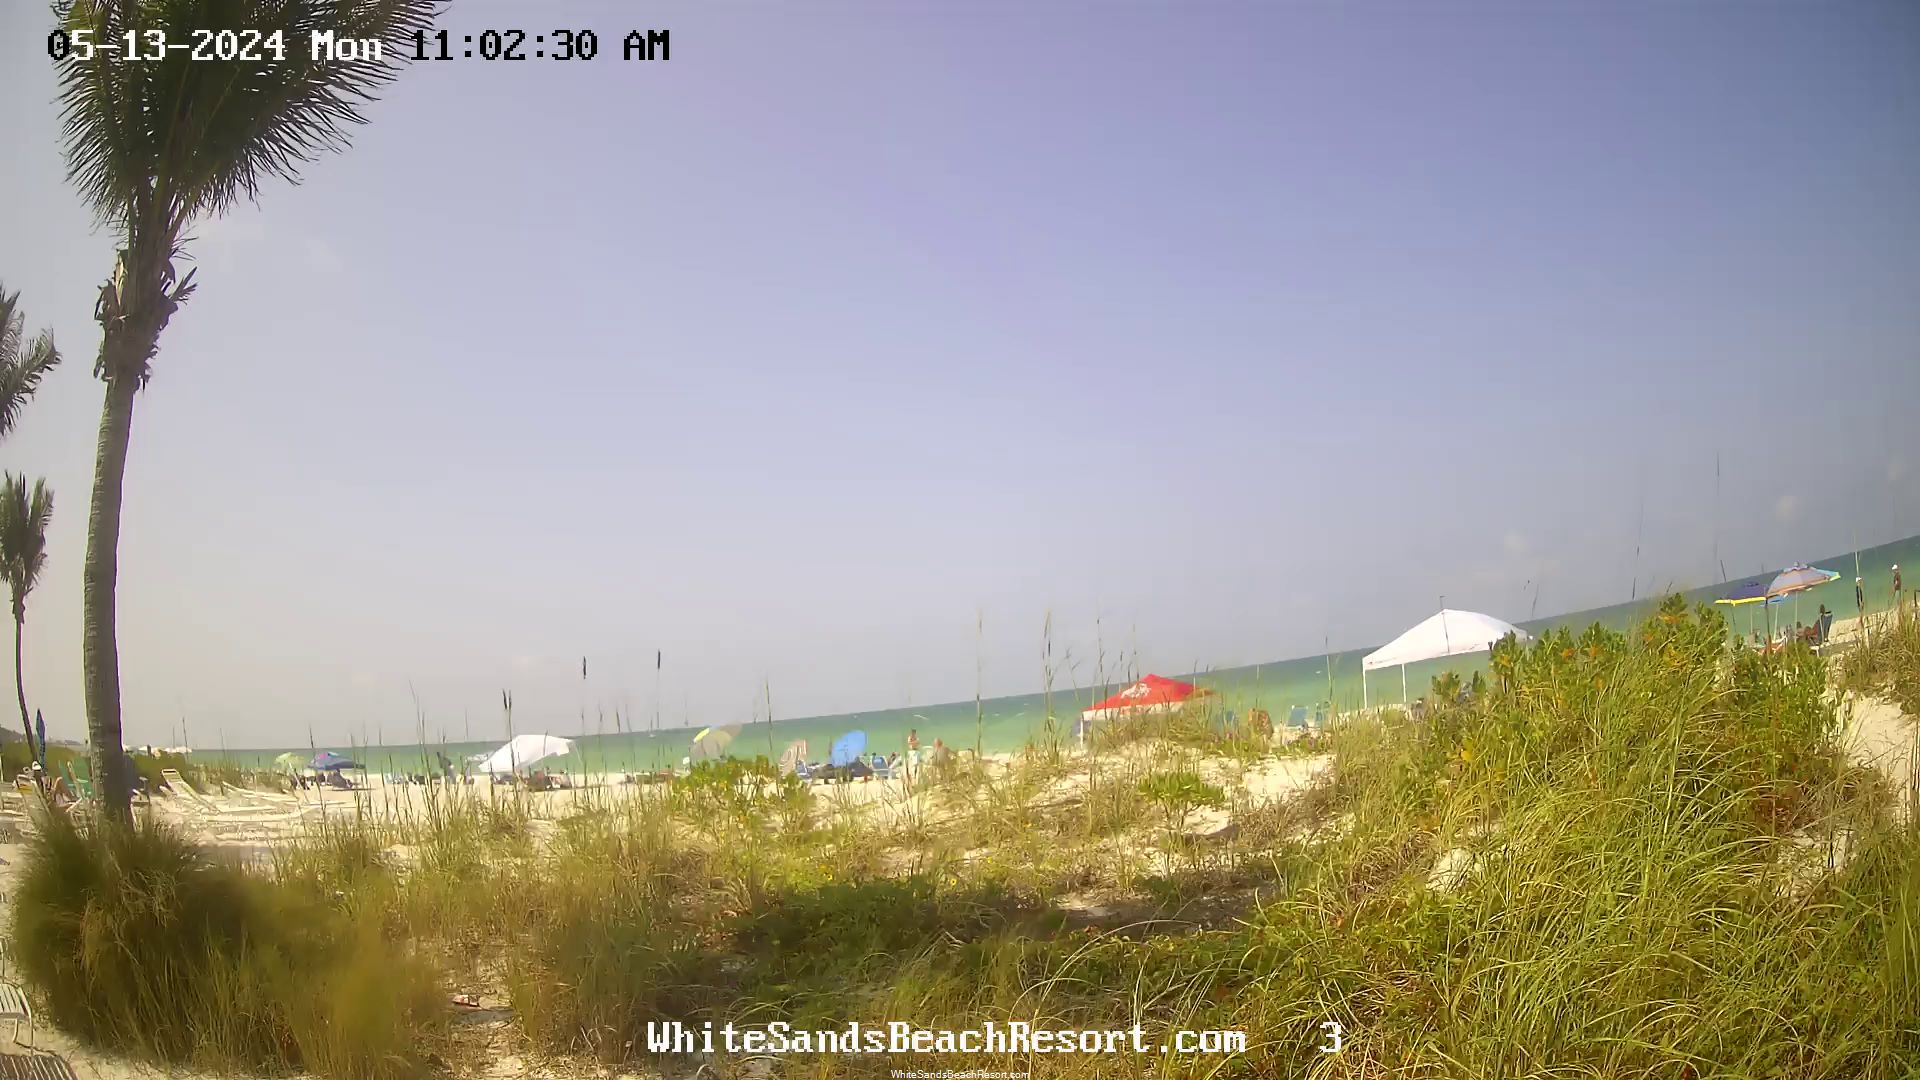 Holmes Beach, Florida Vie. 10:56